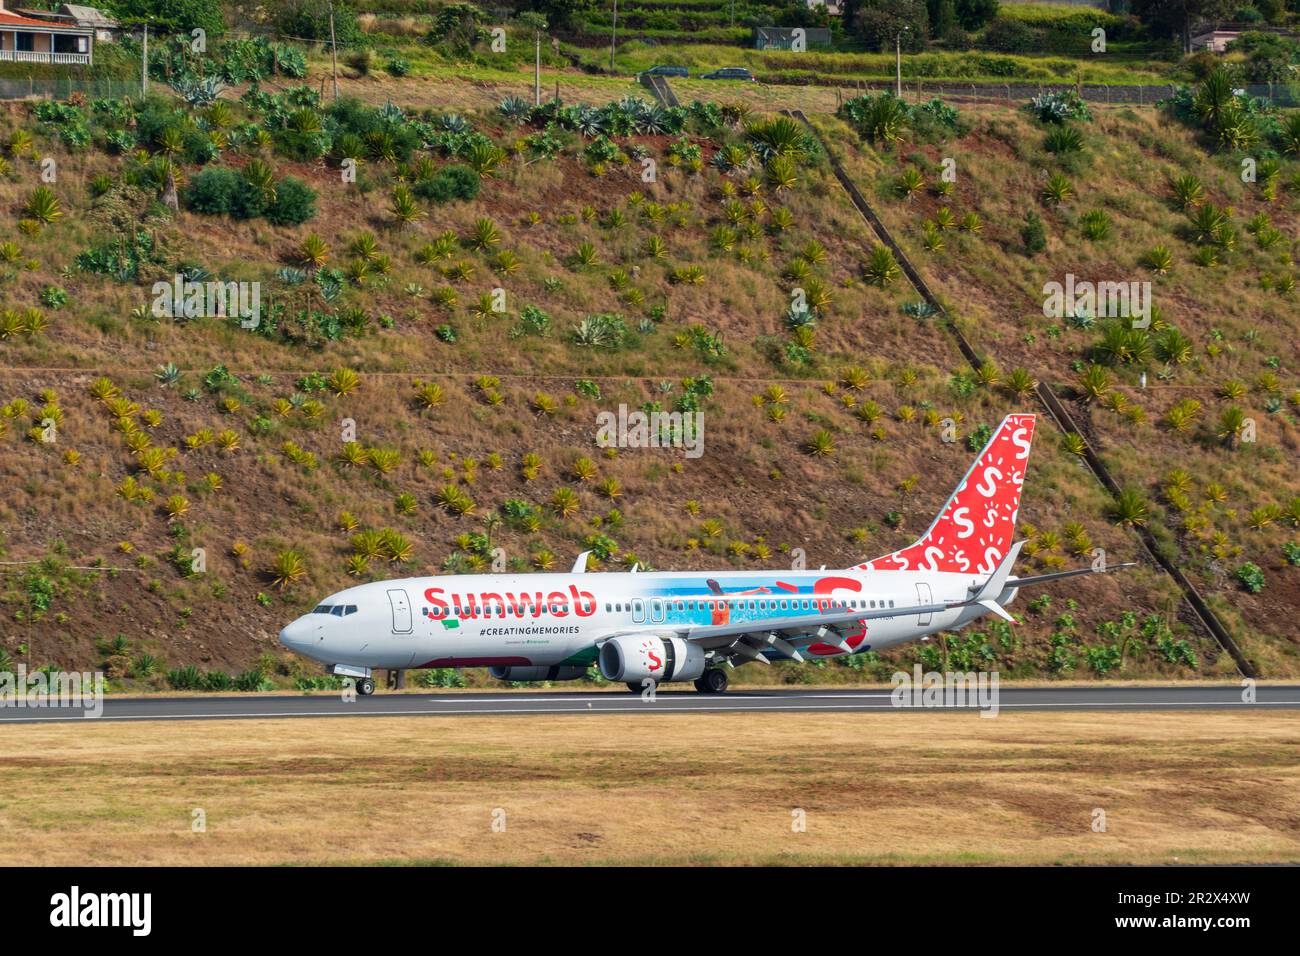 FUNCHAL, PORTOGALLO - 13 novembre: Aereo passeggeri dall'europa Sunweb si prepara al decollo dall'aeroporto di Funchal il 10 maggio 2022 a Madeira, Portogallo Foto Stock